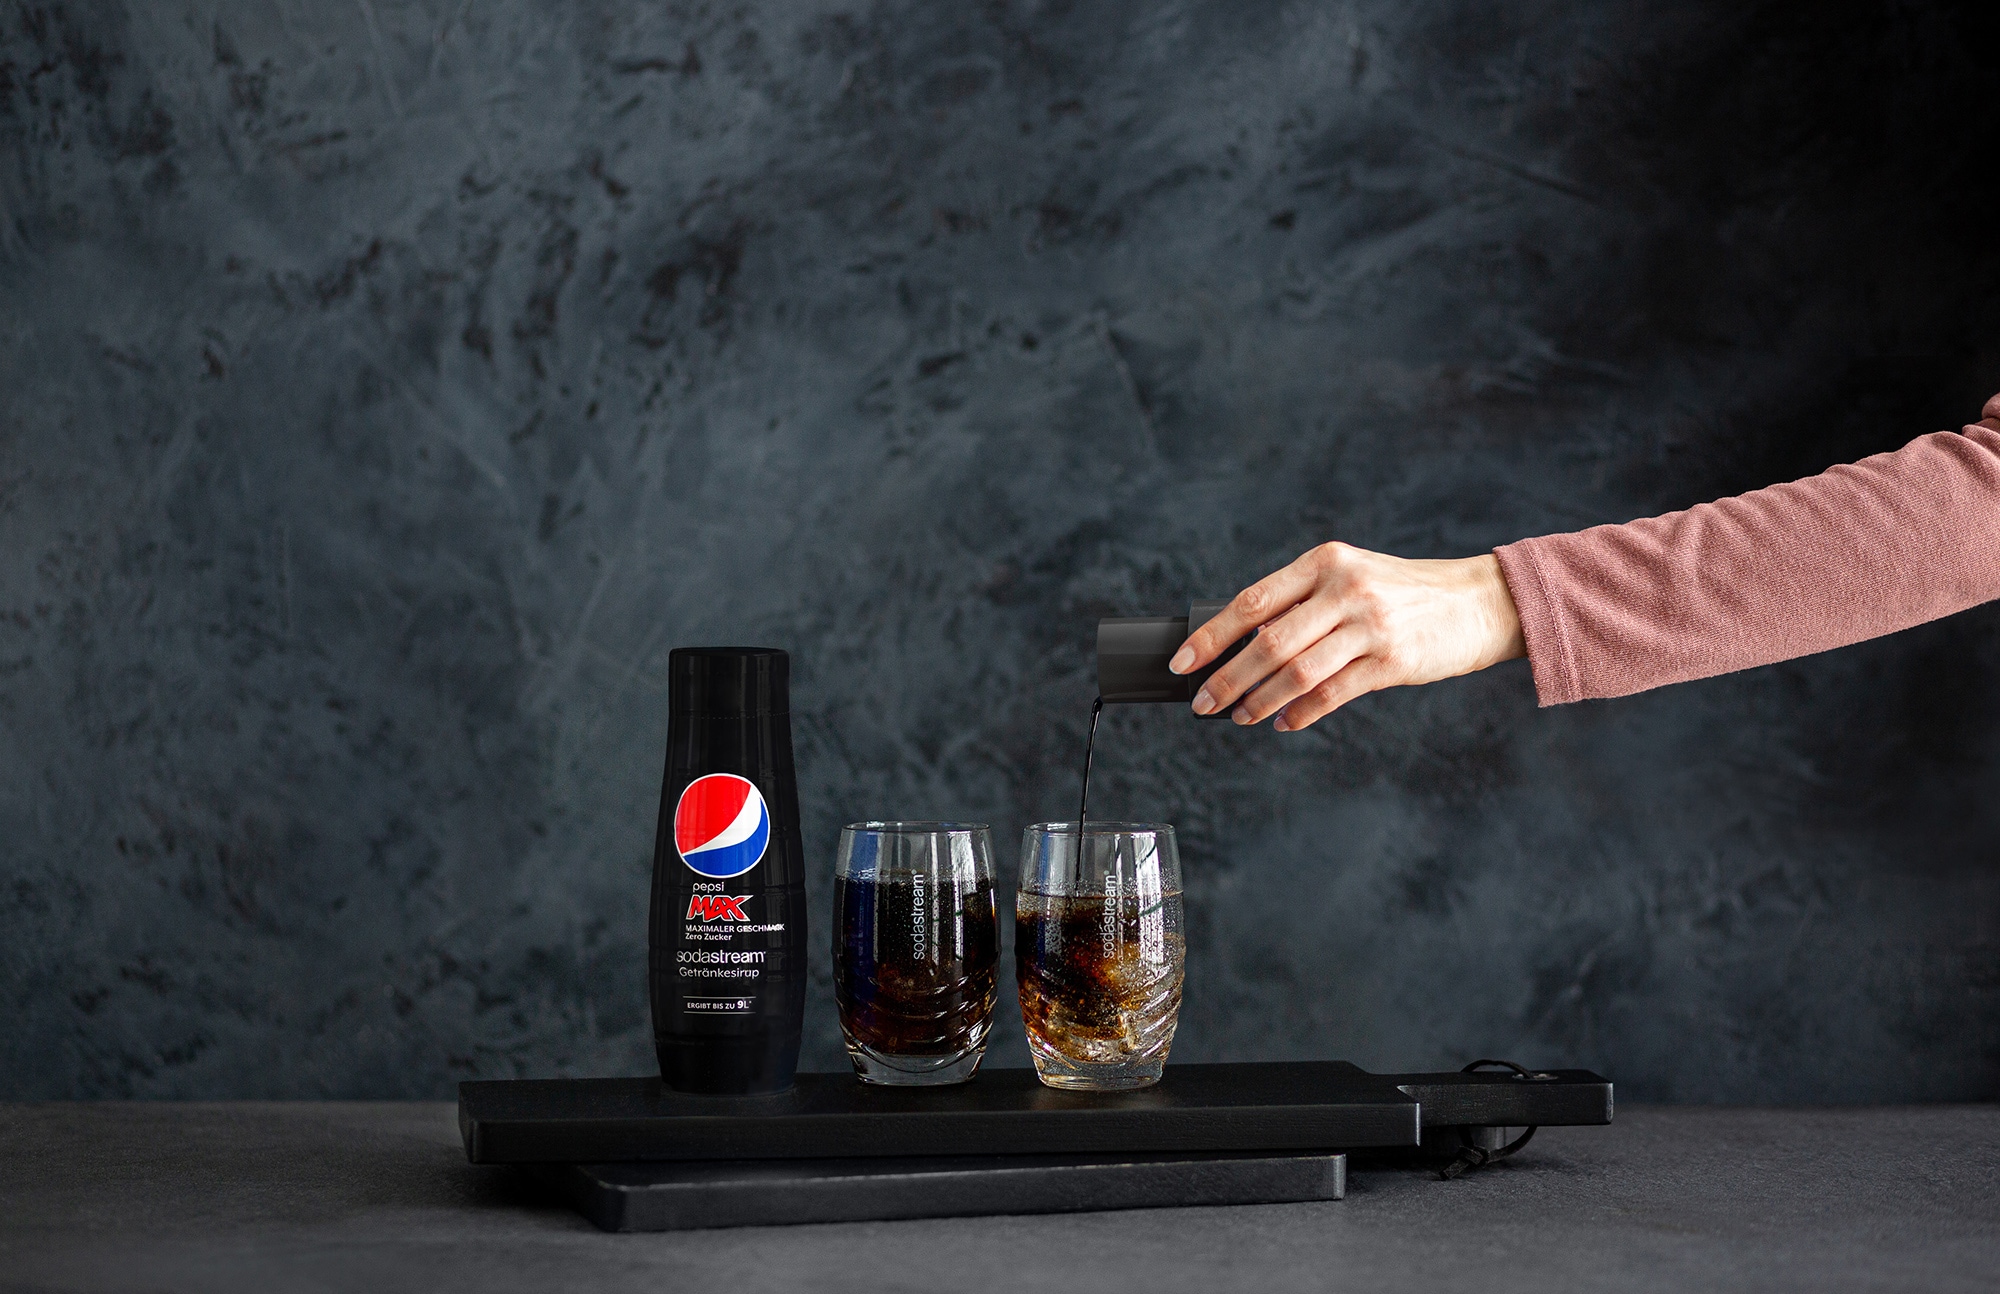 SodaStream Getränke-Sirup, PepsiMax & SchwipSchwap Zero, (4 Flaschen), für bis zu 9 Liter Fertiggetränk